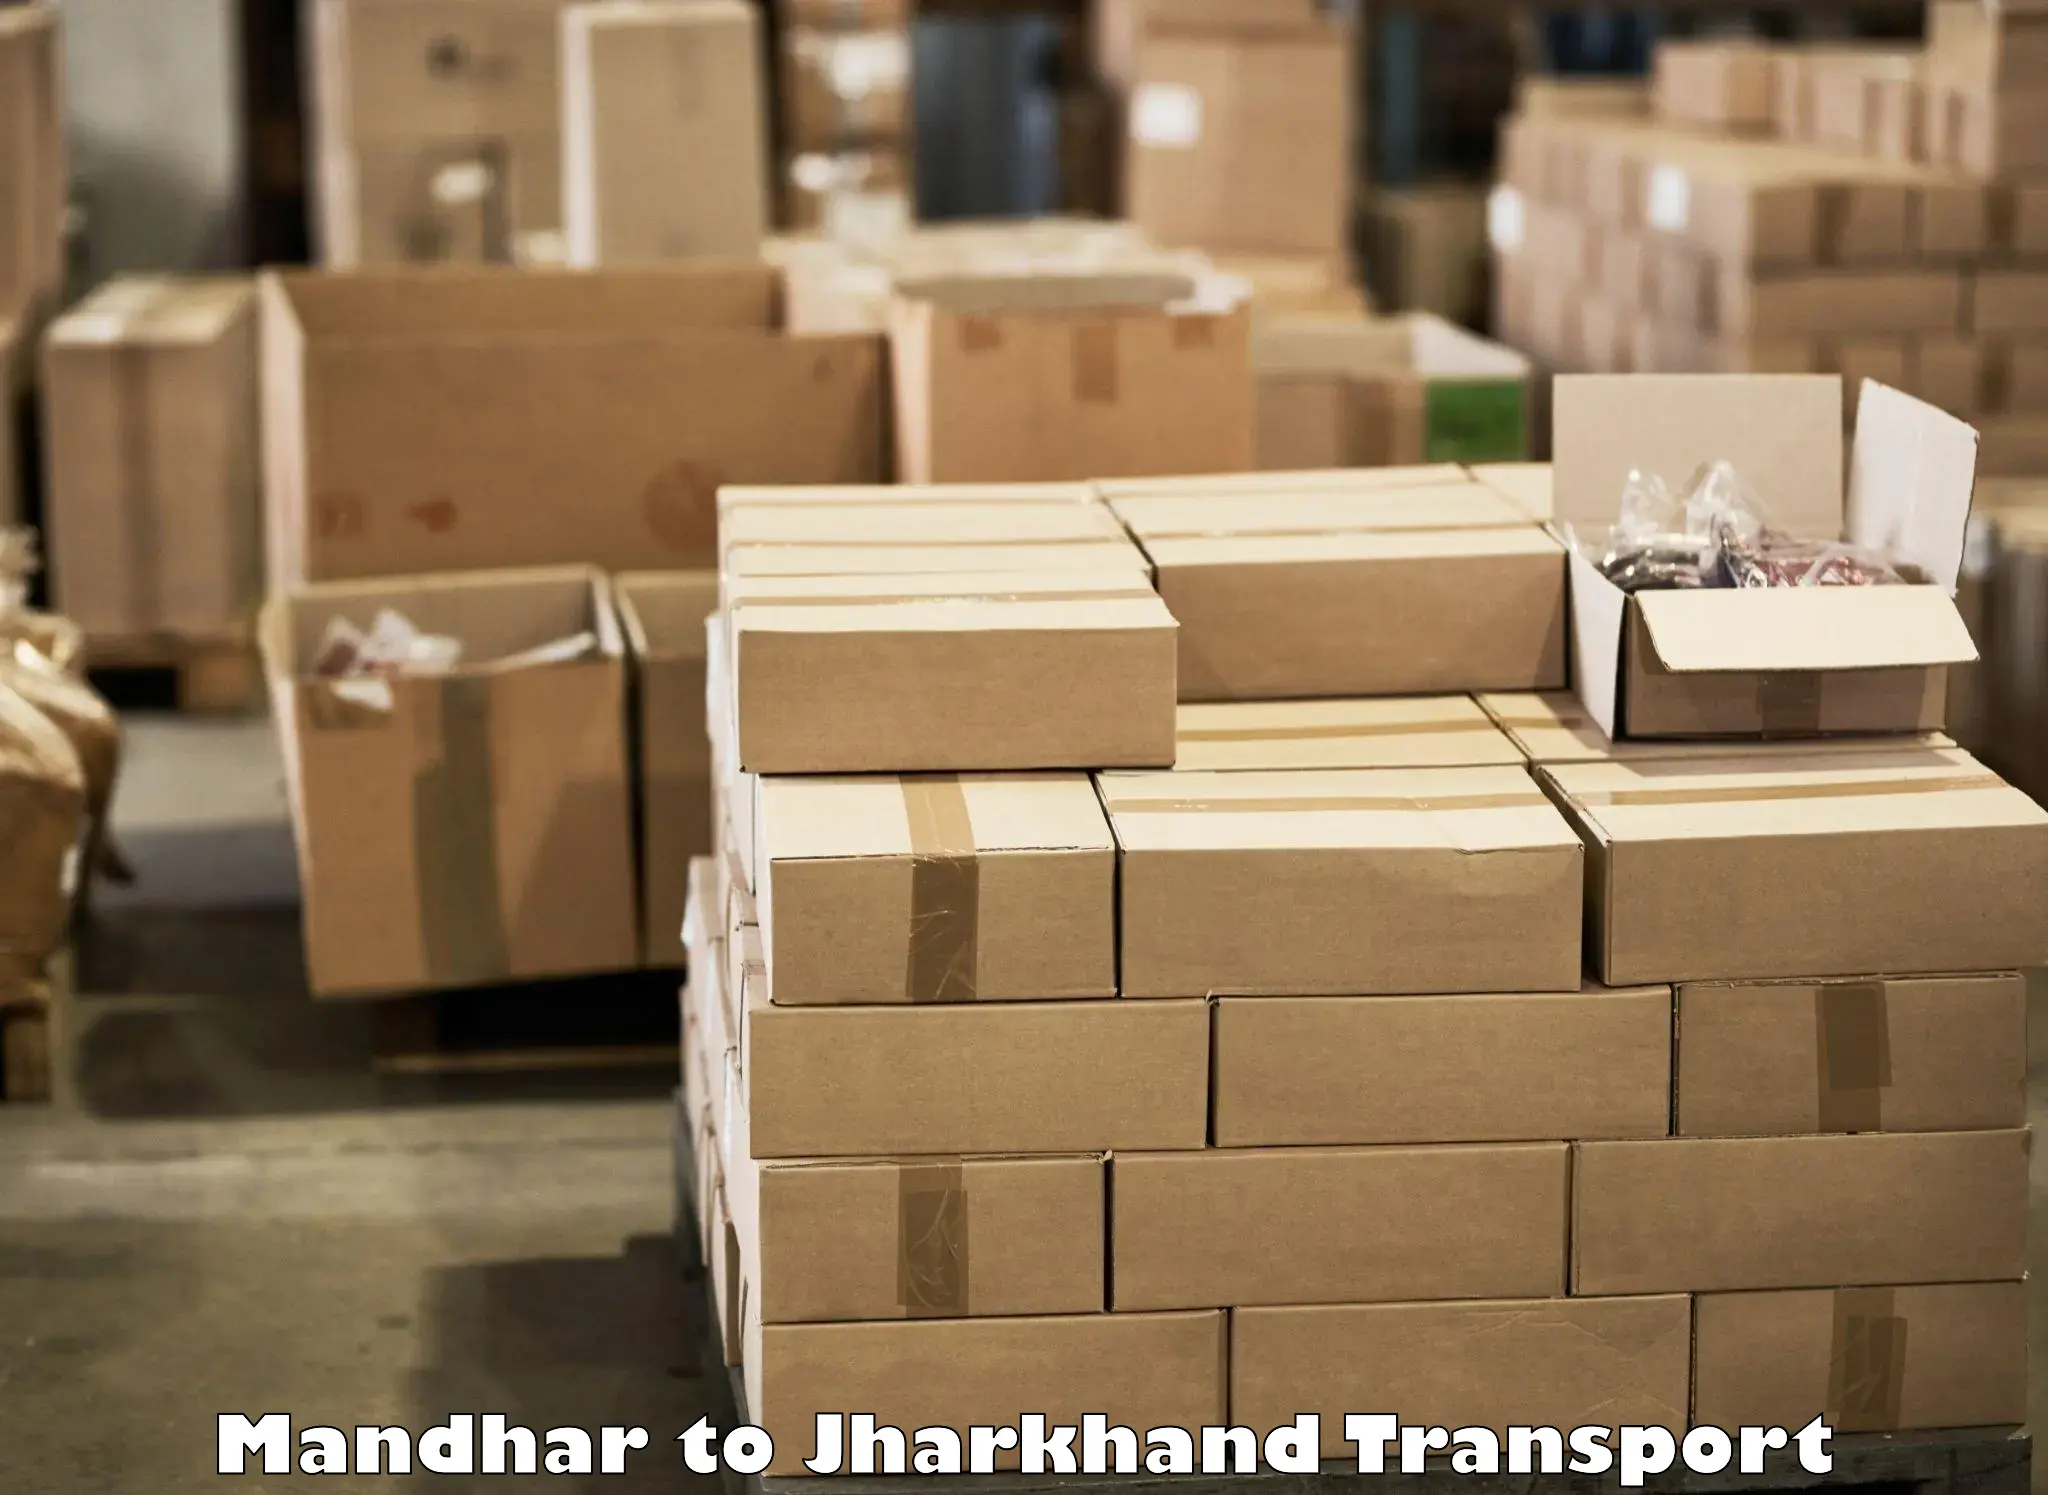 Lorry transport service Mandhar to Padma Hazaribagh